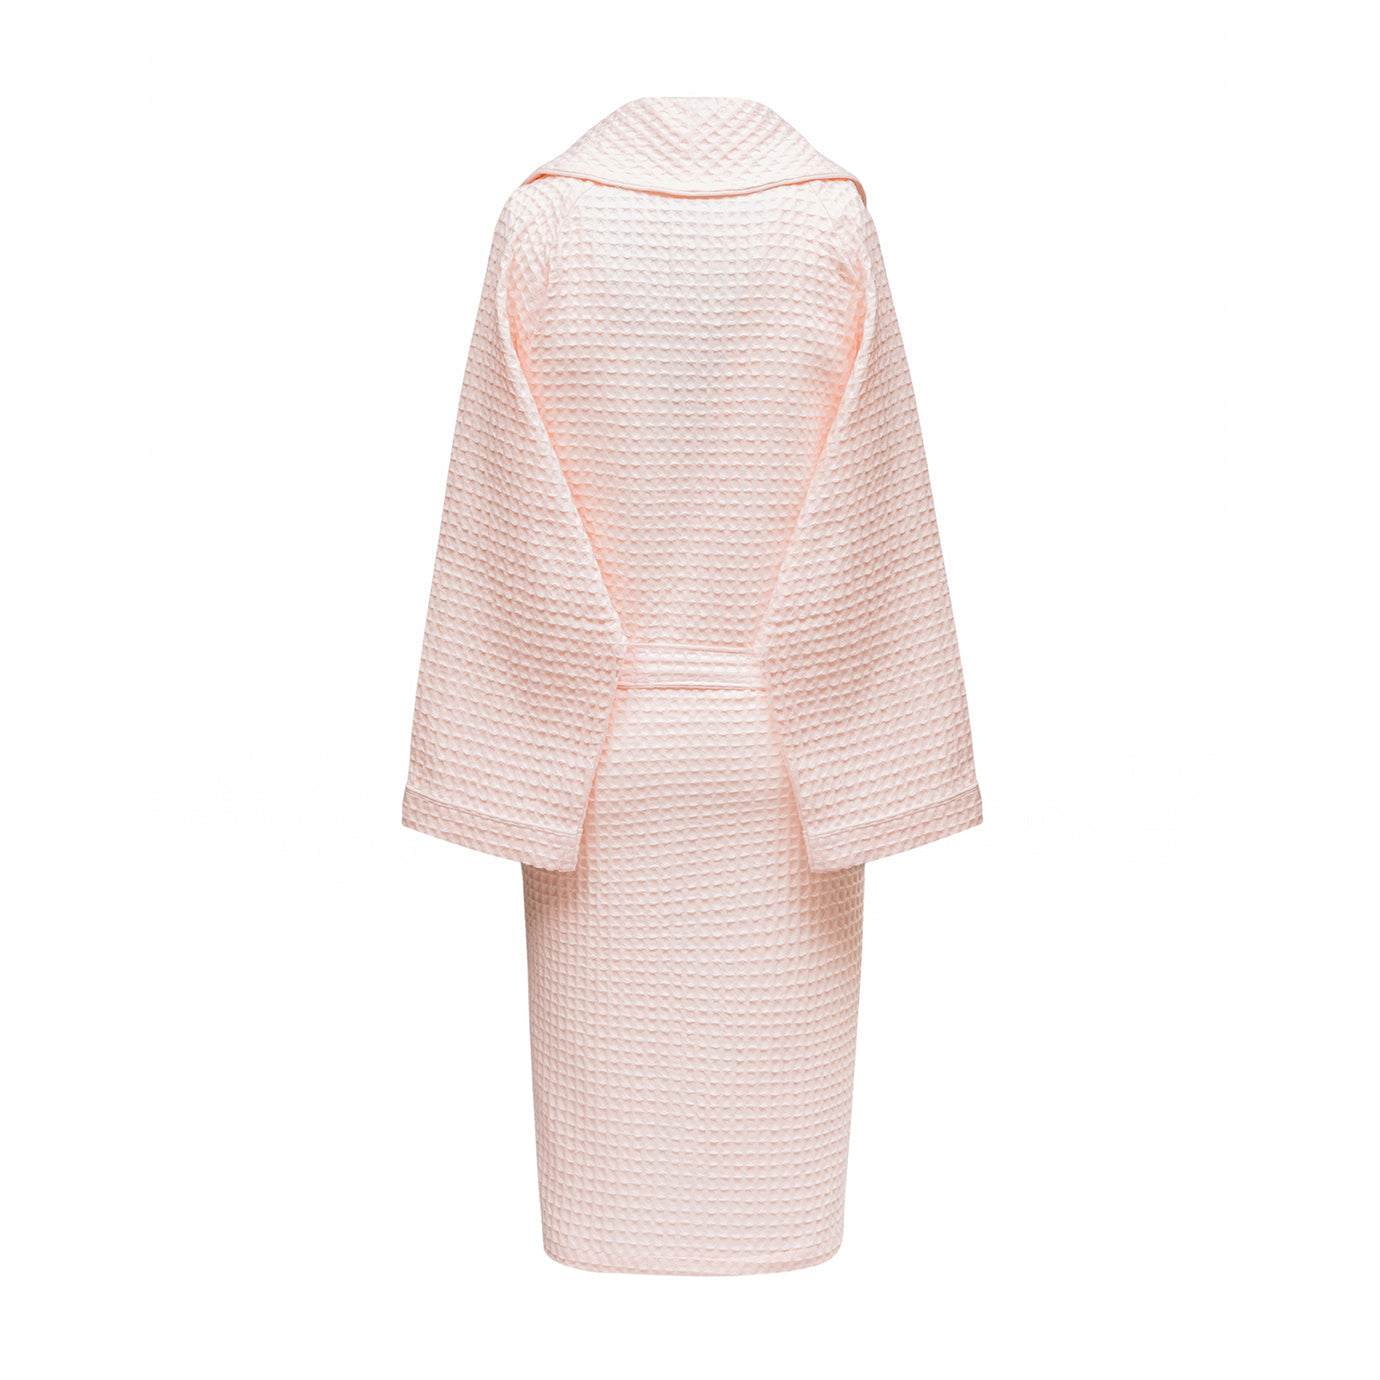 Honeycomb bathrobe